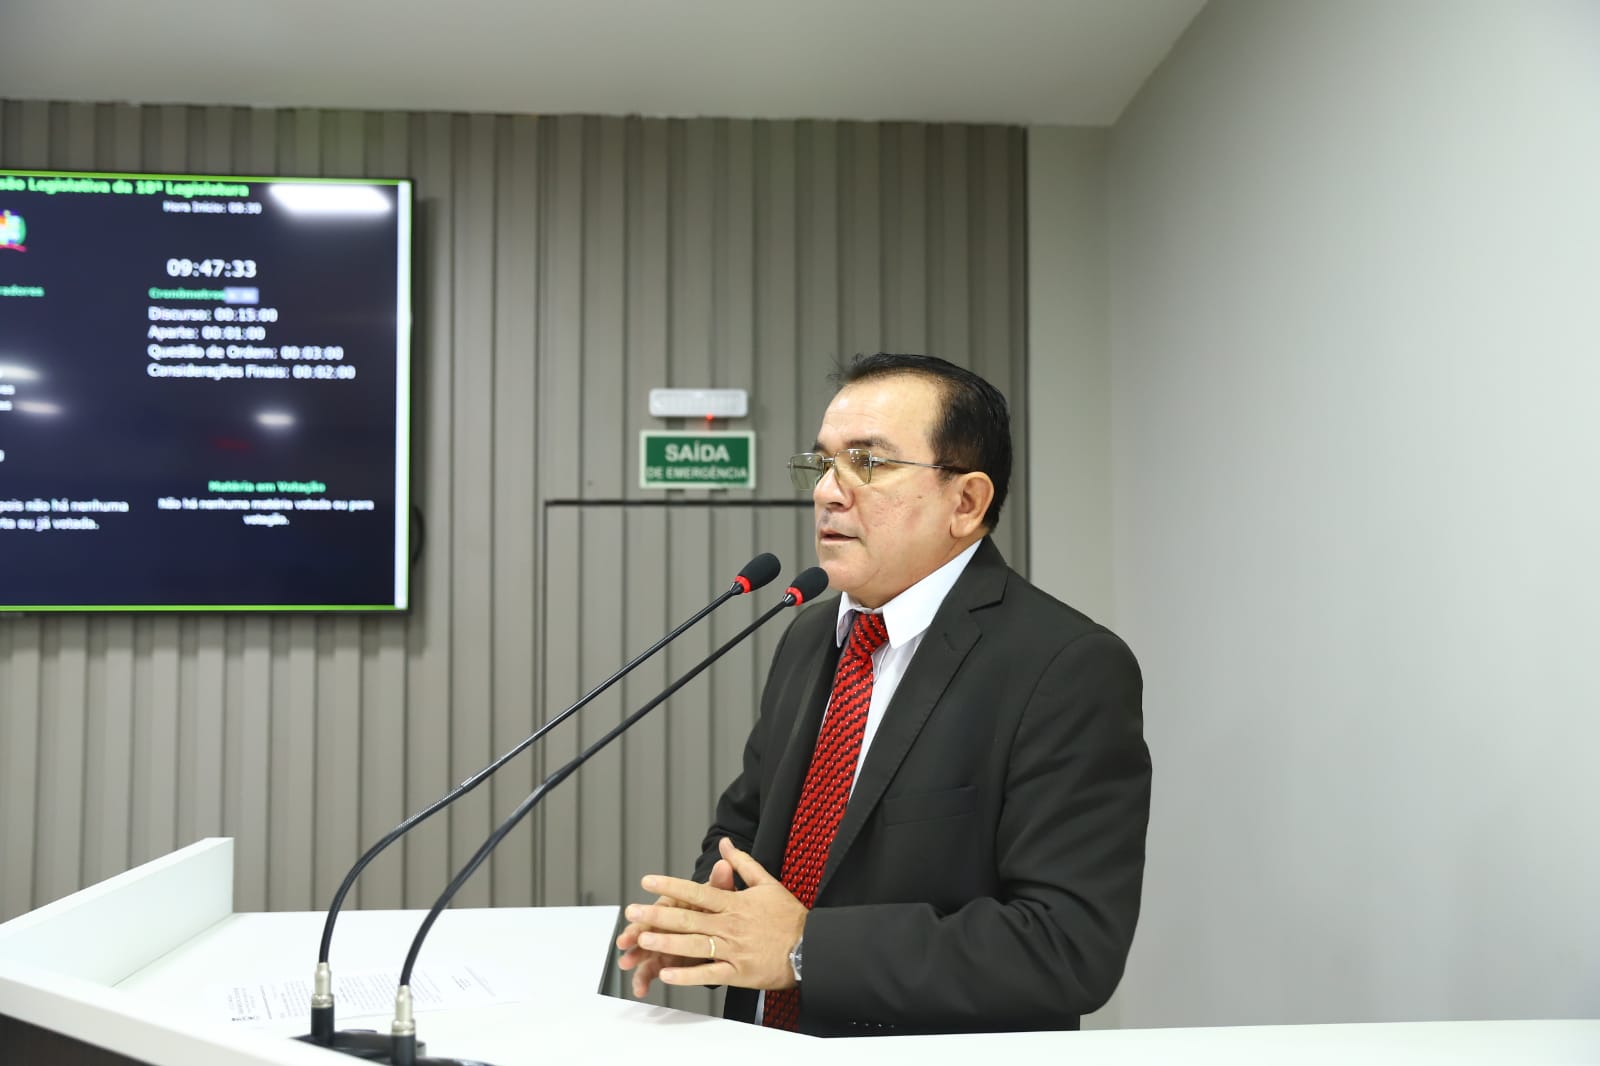 Massilon solicita expansão do Prosai para atender a área do Bairro Senador José Esteves   